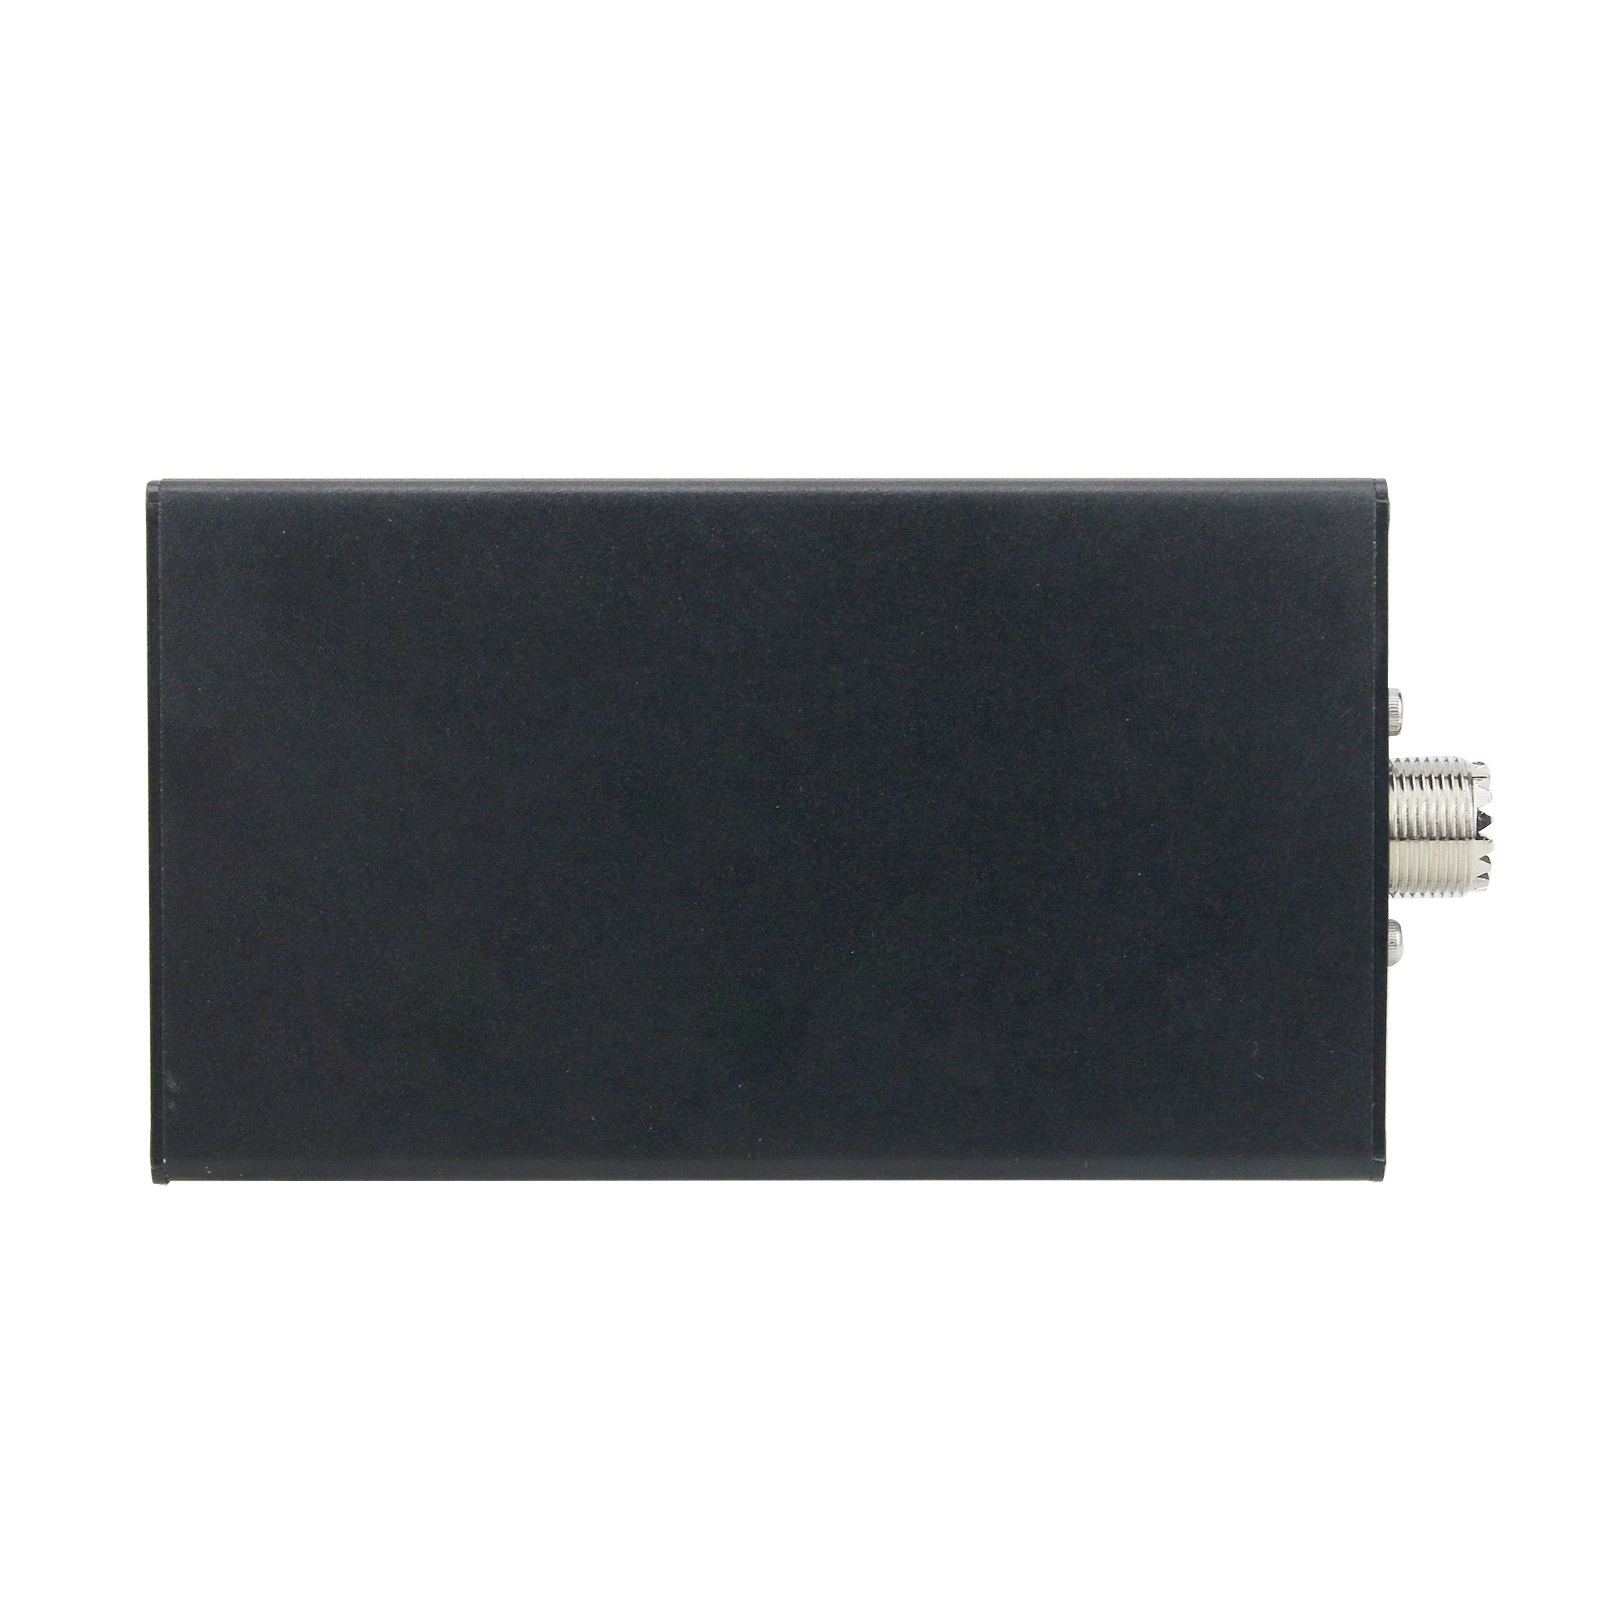 Portable-uSDX-8-Band-SDR-All-Mode-Transceiver-USB-LSB-CW-AM-FM-HF-SSB-QRP-Transceiver-QCX-SSB-with-B-1915485-5